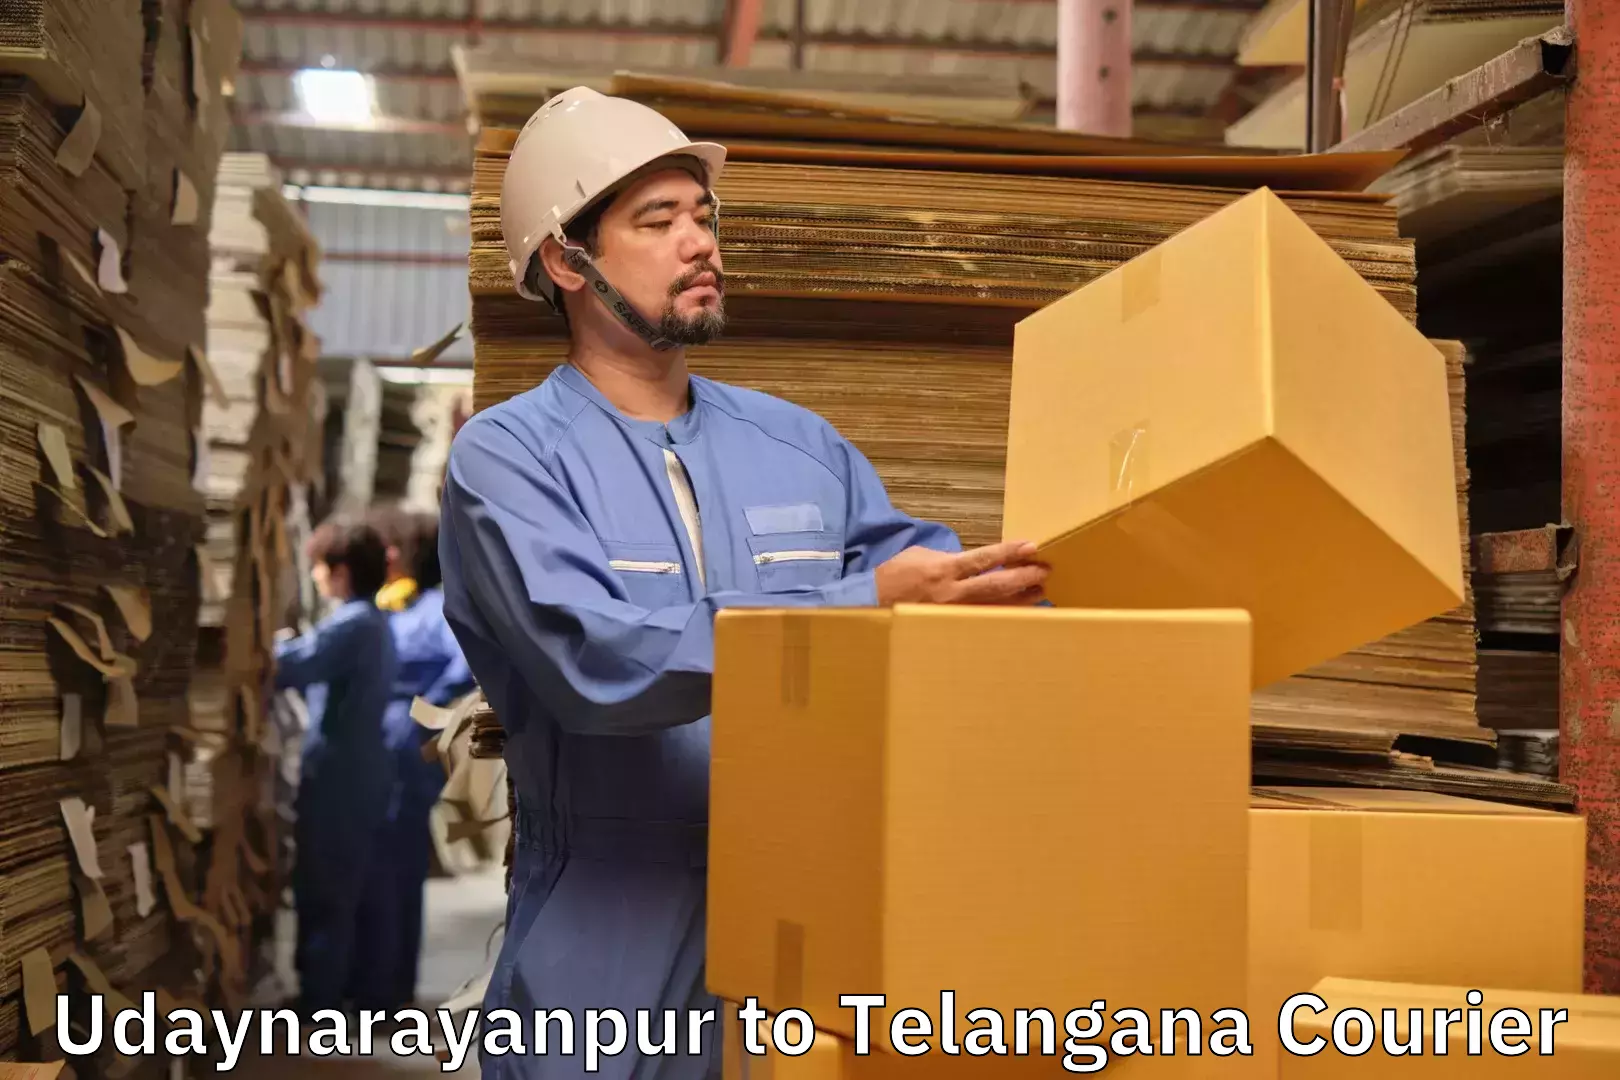 Luggage shipment specialists Udaynarayanpur to Thungathurthi